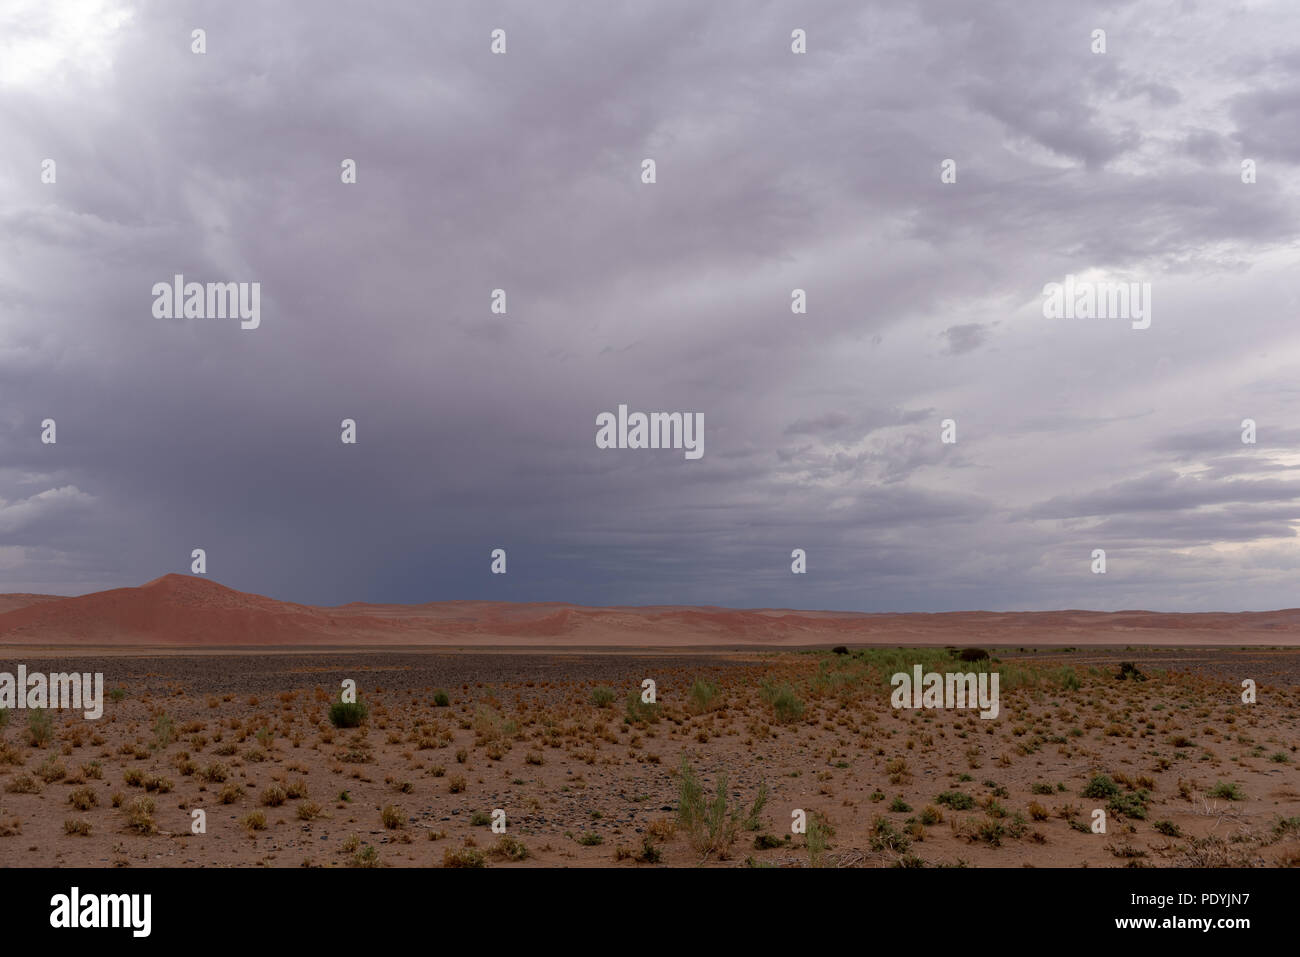 Dark thunderstom clouds over arid desert vegetation, Namibia Stock Photo